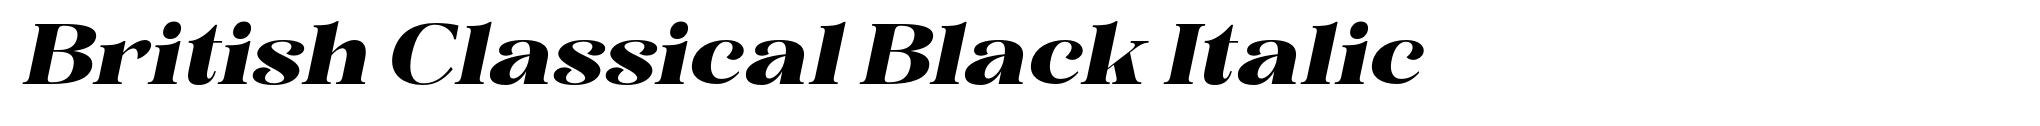 British Classical Black Italic image